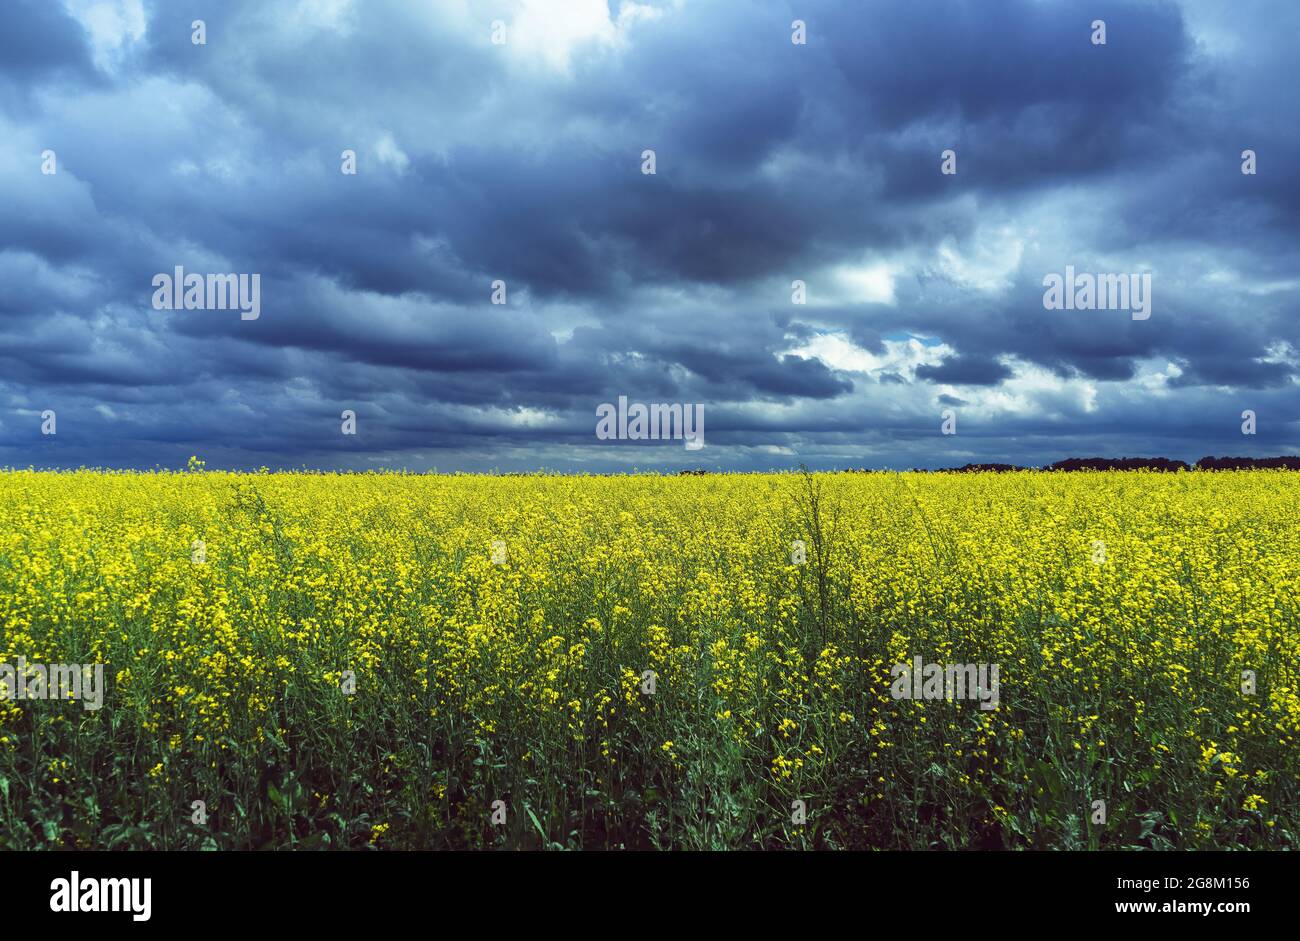 piante di colza gialle in fiore con cielo scuro tempestoso sopra di esso Foto Stock